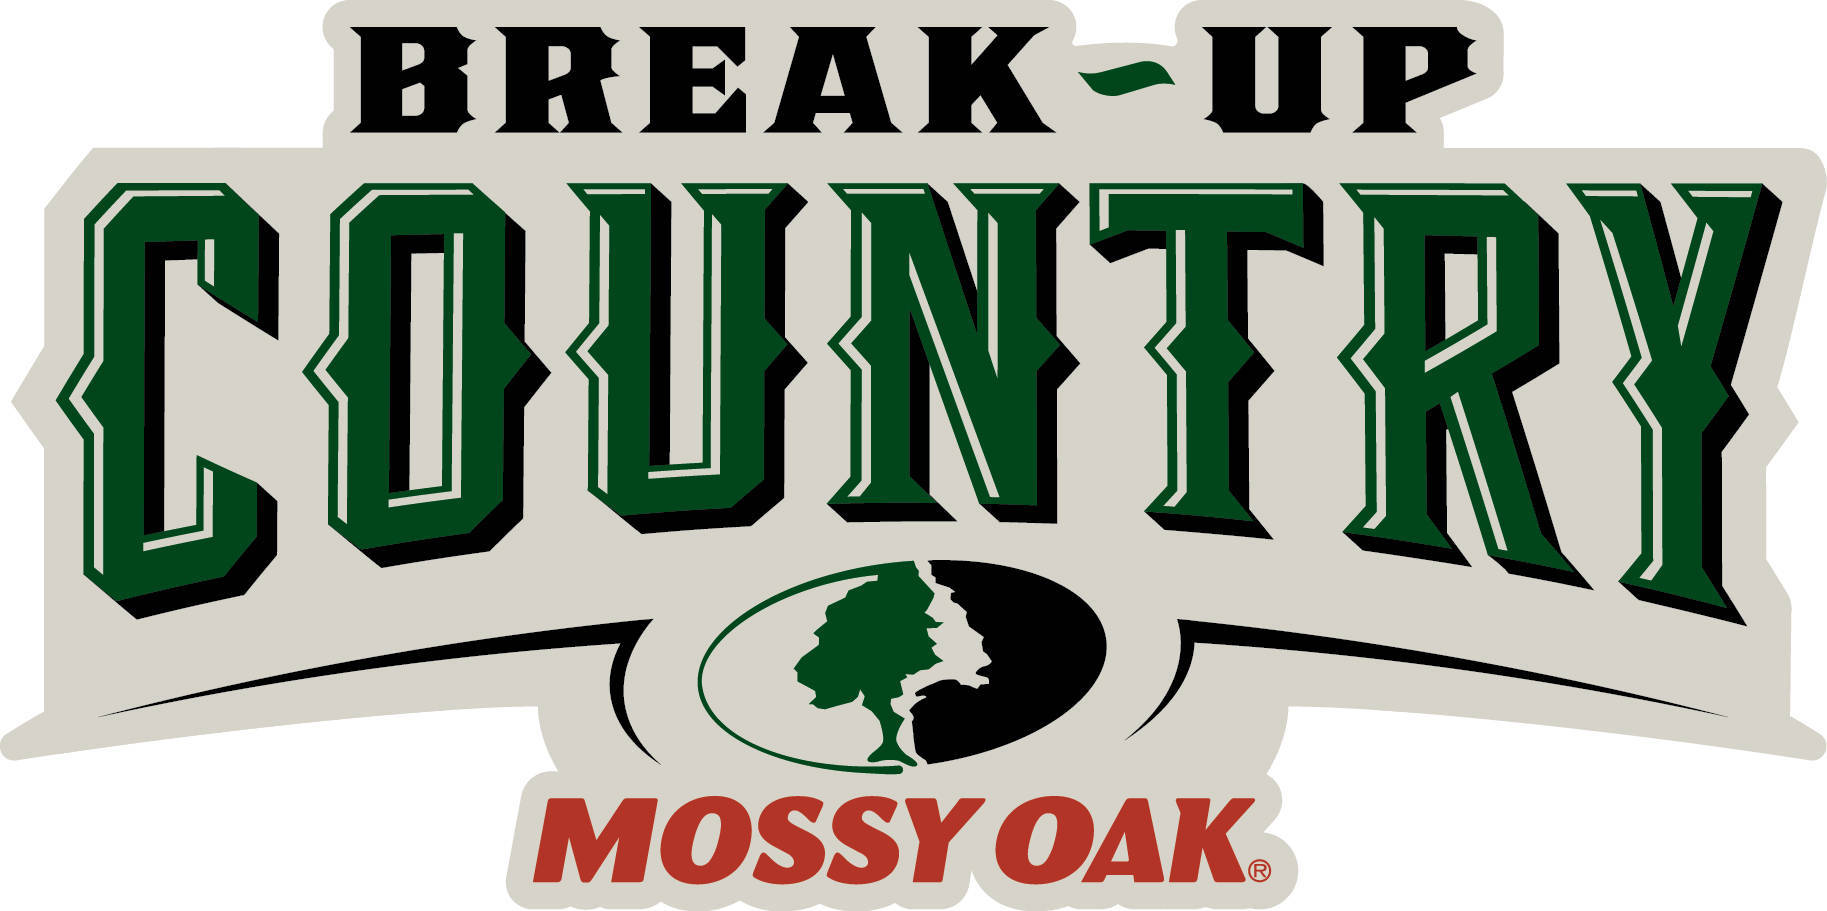 Mossy Oak Break Up Country